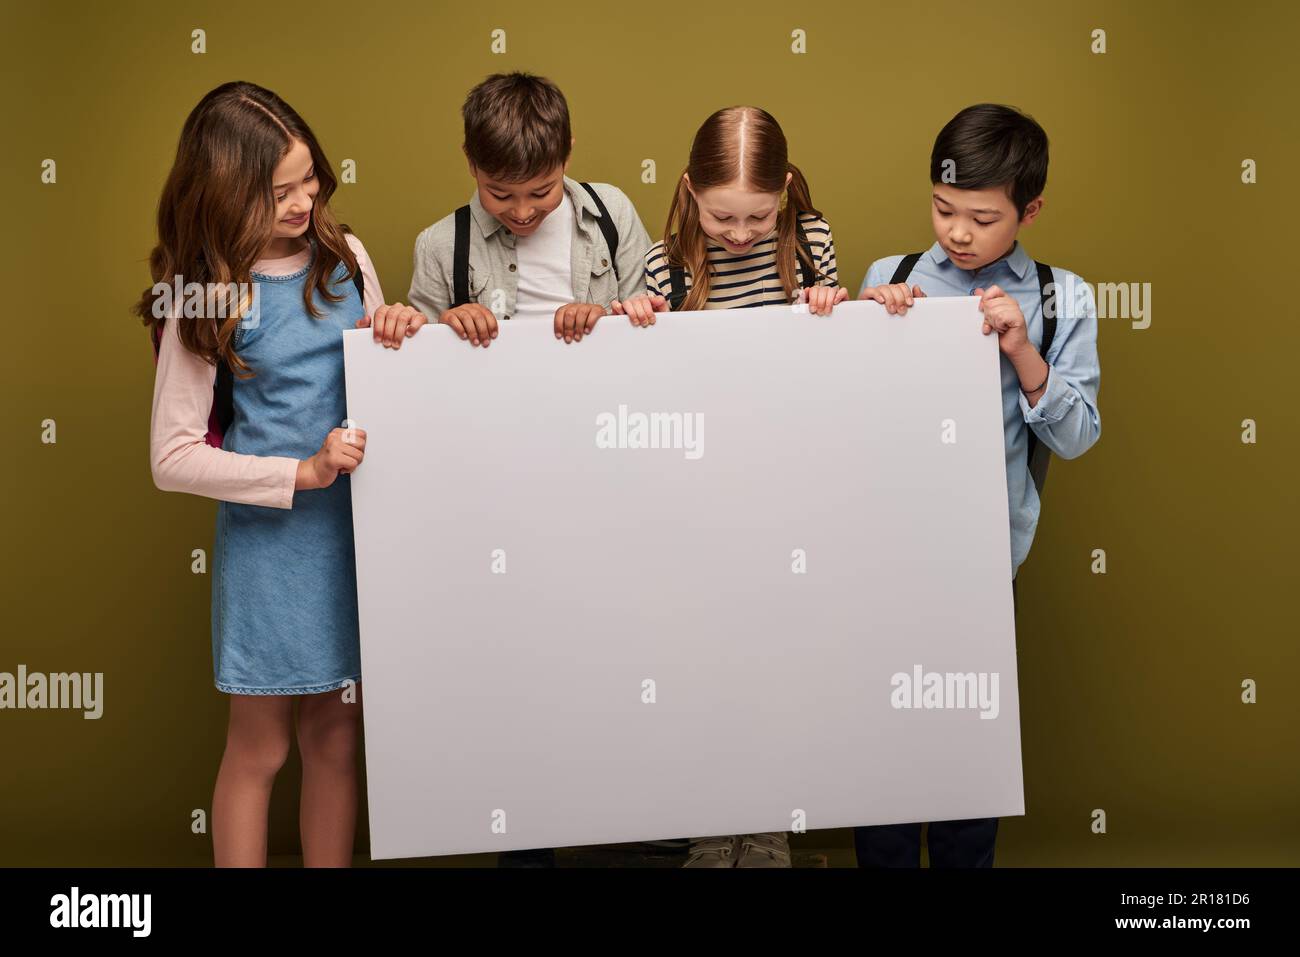 Positive multiethnische Kinder mit lächelnden Rucksäcken, während sie zusammenstanden und auf ein leeres Plakat auf Khaki-Hintergrund blickten, Happy children's d Stockfoto